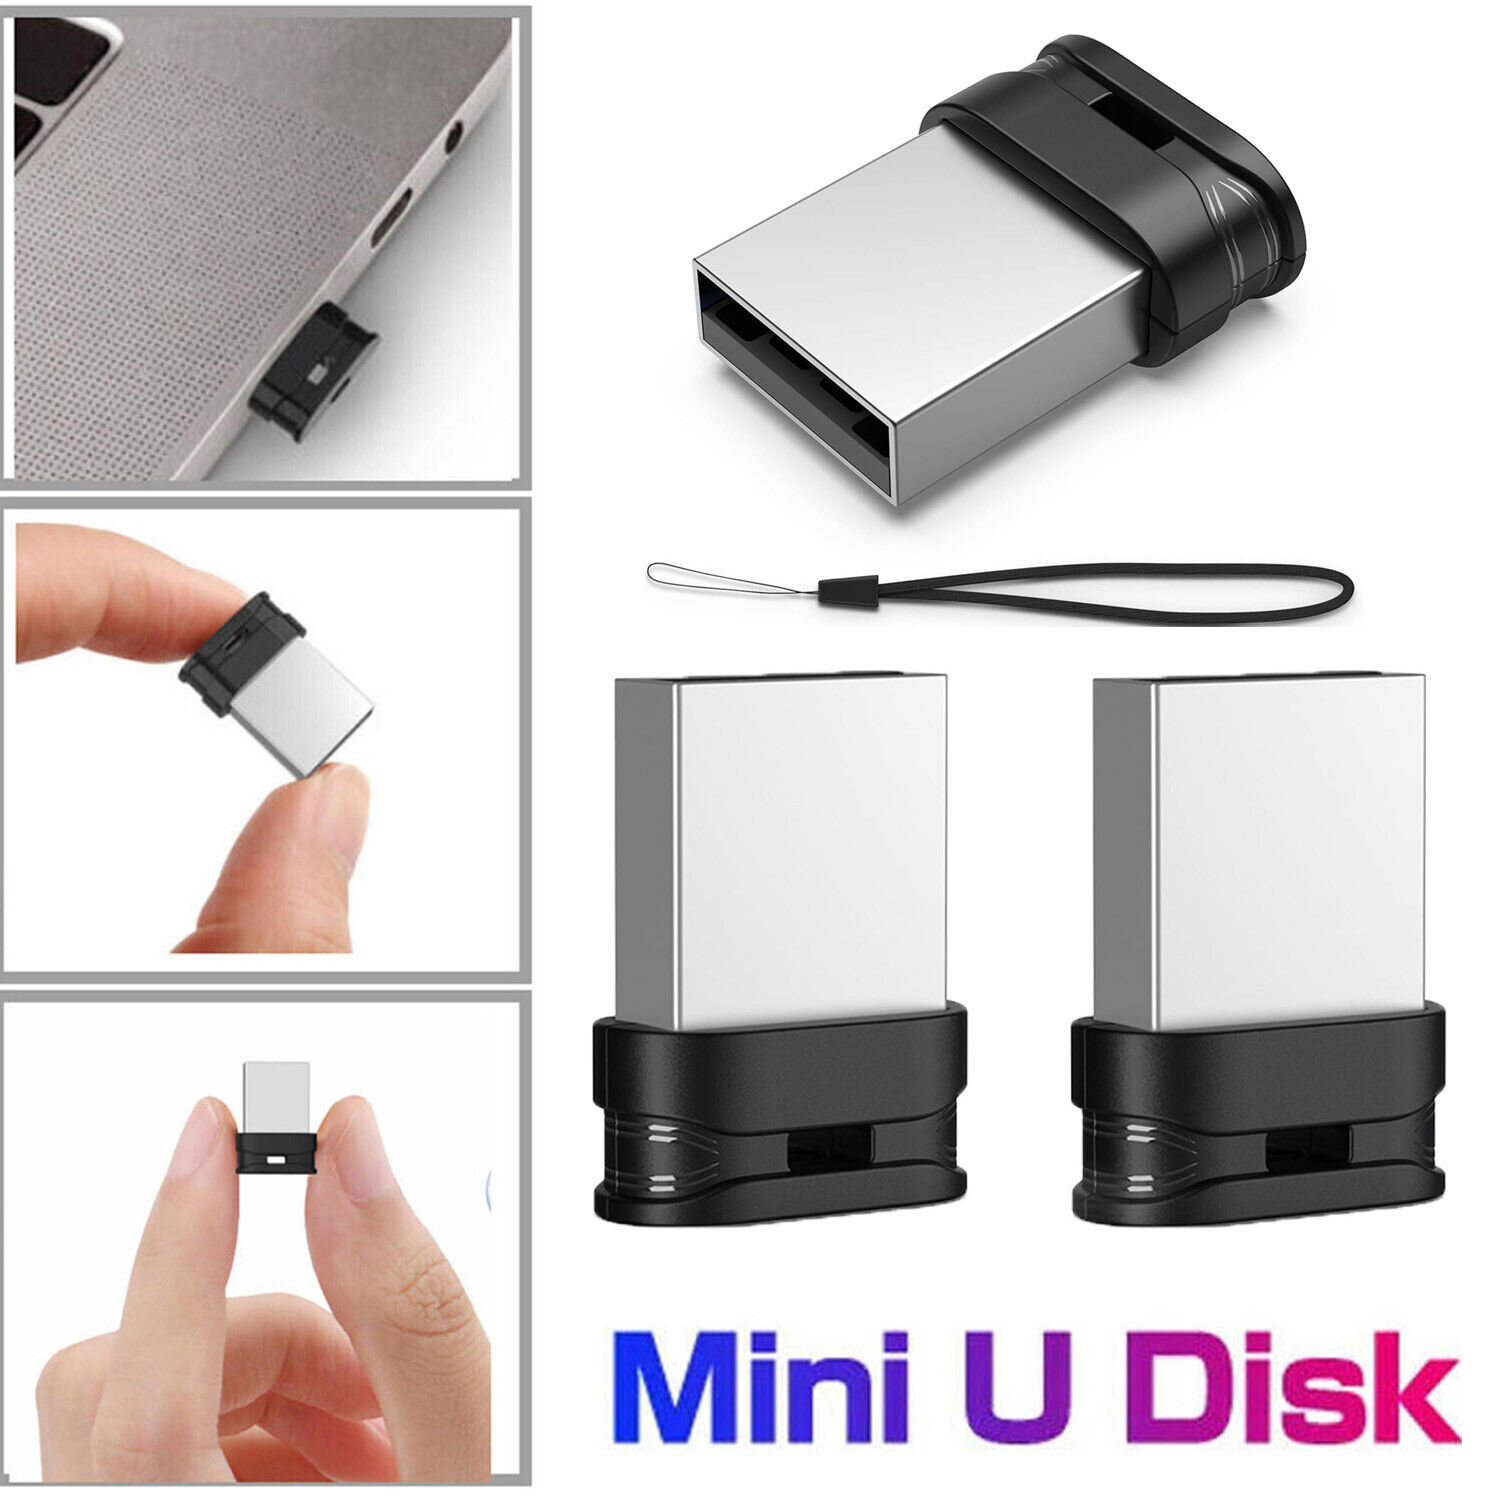 Super Slim mini USB Flash Drive Pen 32gb 64gb Lot Memory Sticks USB 2.0 Drives